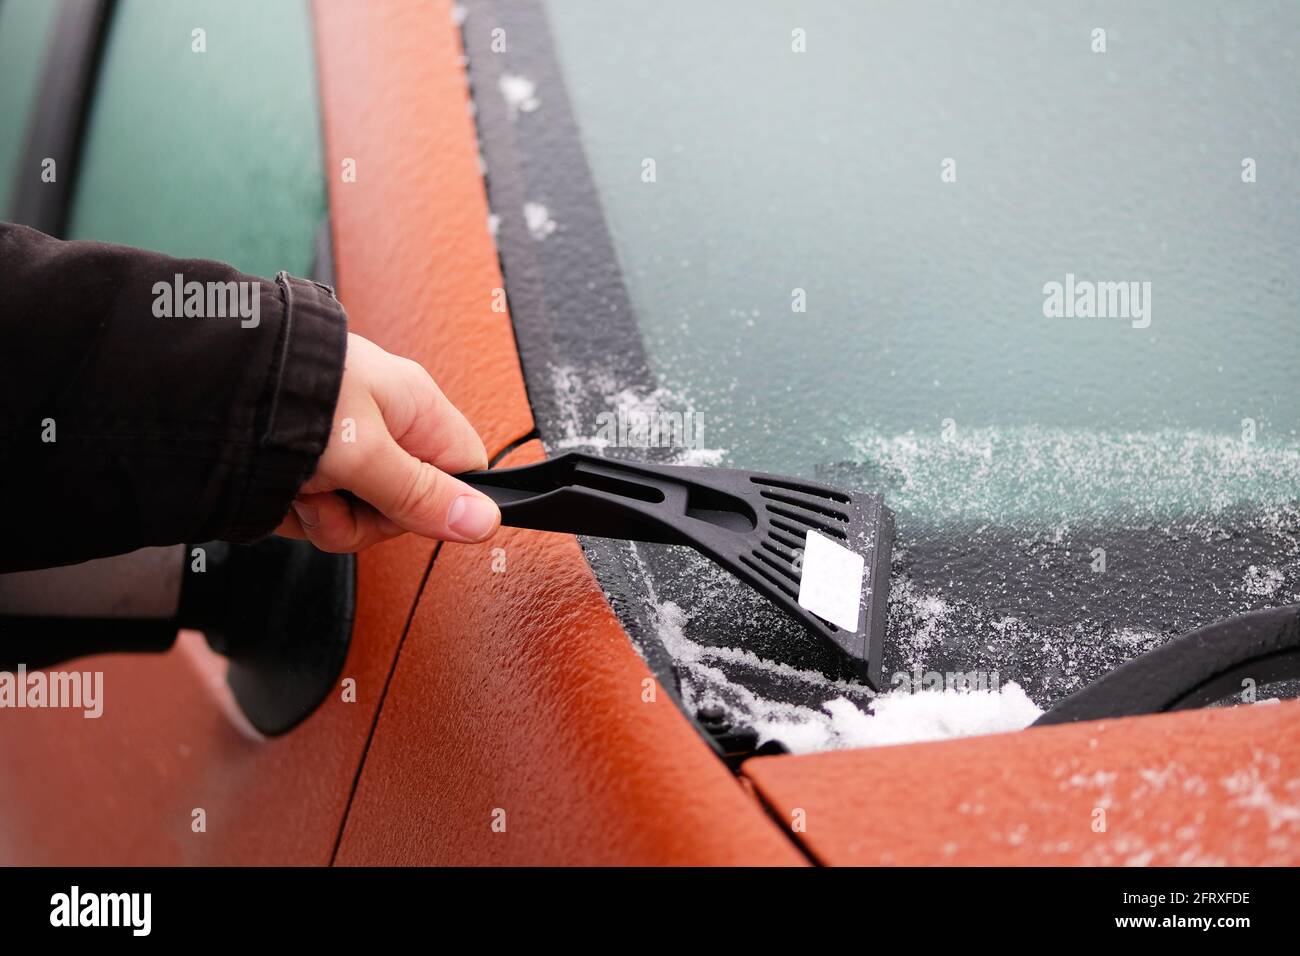 Raschiatore in mano mans. L'uomo libera la neve dal ghiaccio del parabrezza dell'auto. Pulizia del finestrino arancione dell'automobile. Foto Stock